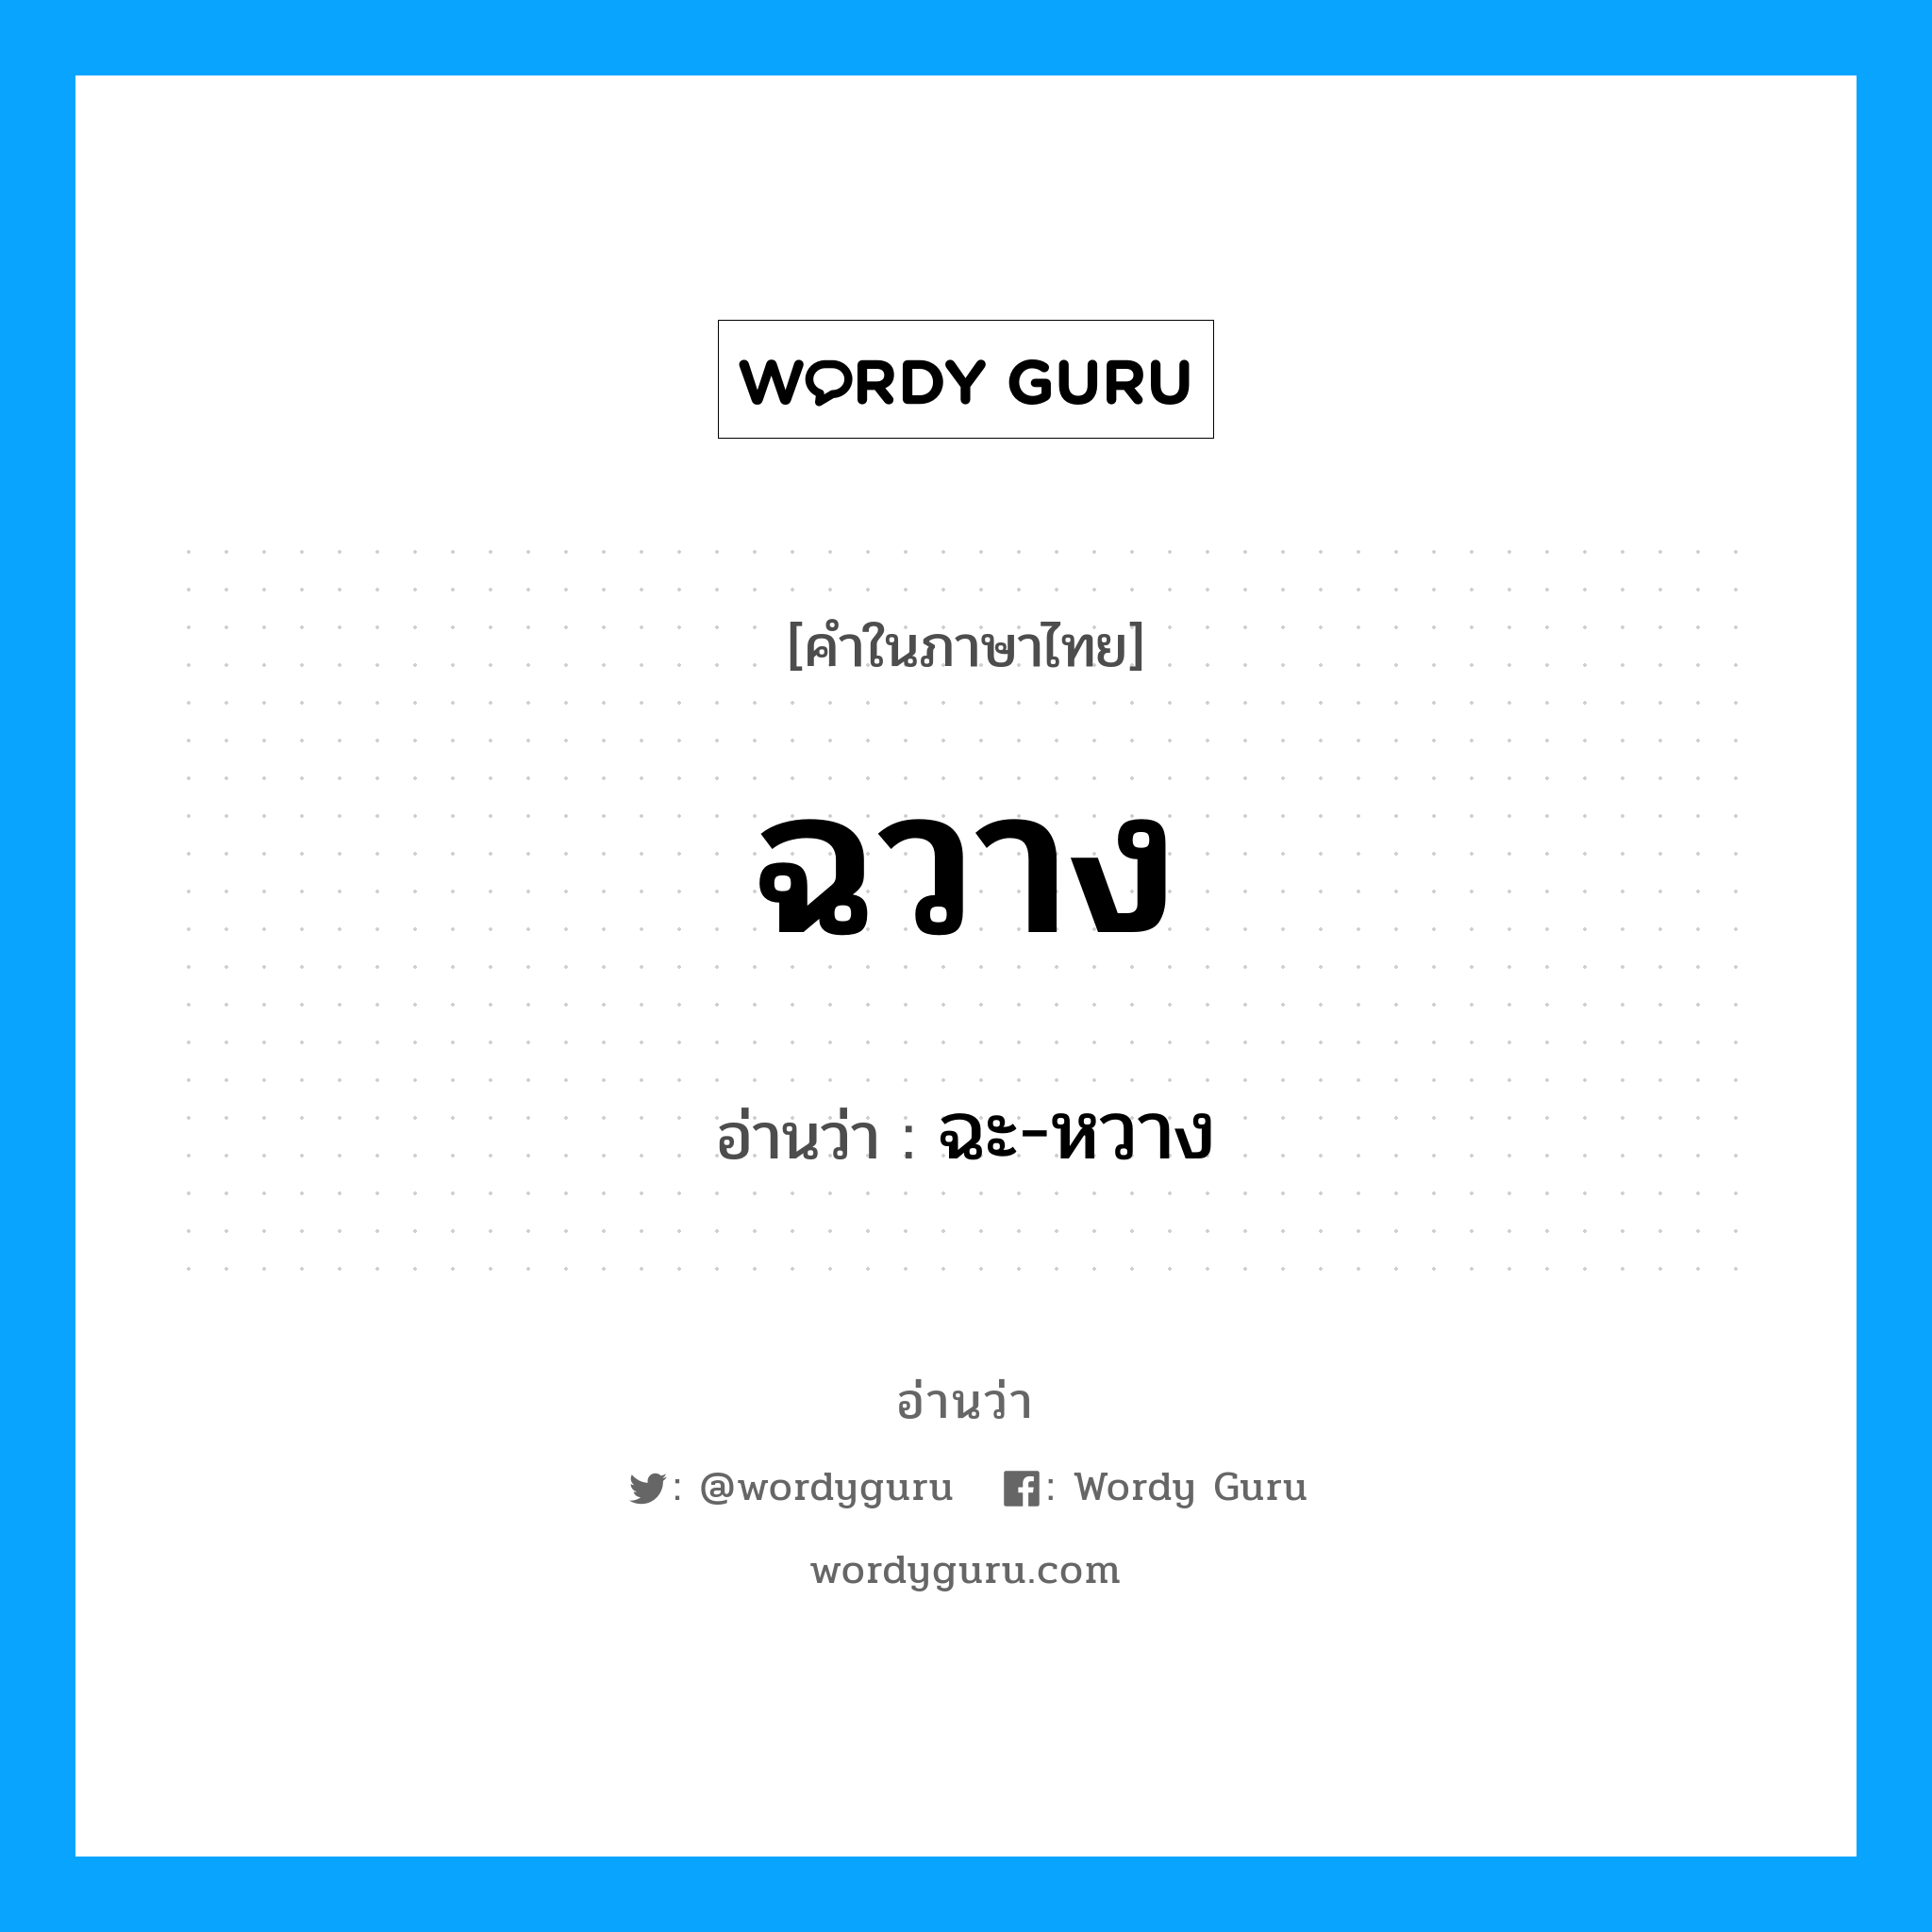 ฉะ-หวาง เป็นคำอ่านของคำไหน?, คำในภาษาไทย ฉะ-หวาง อ่านว่า ฉวาง